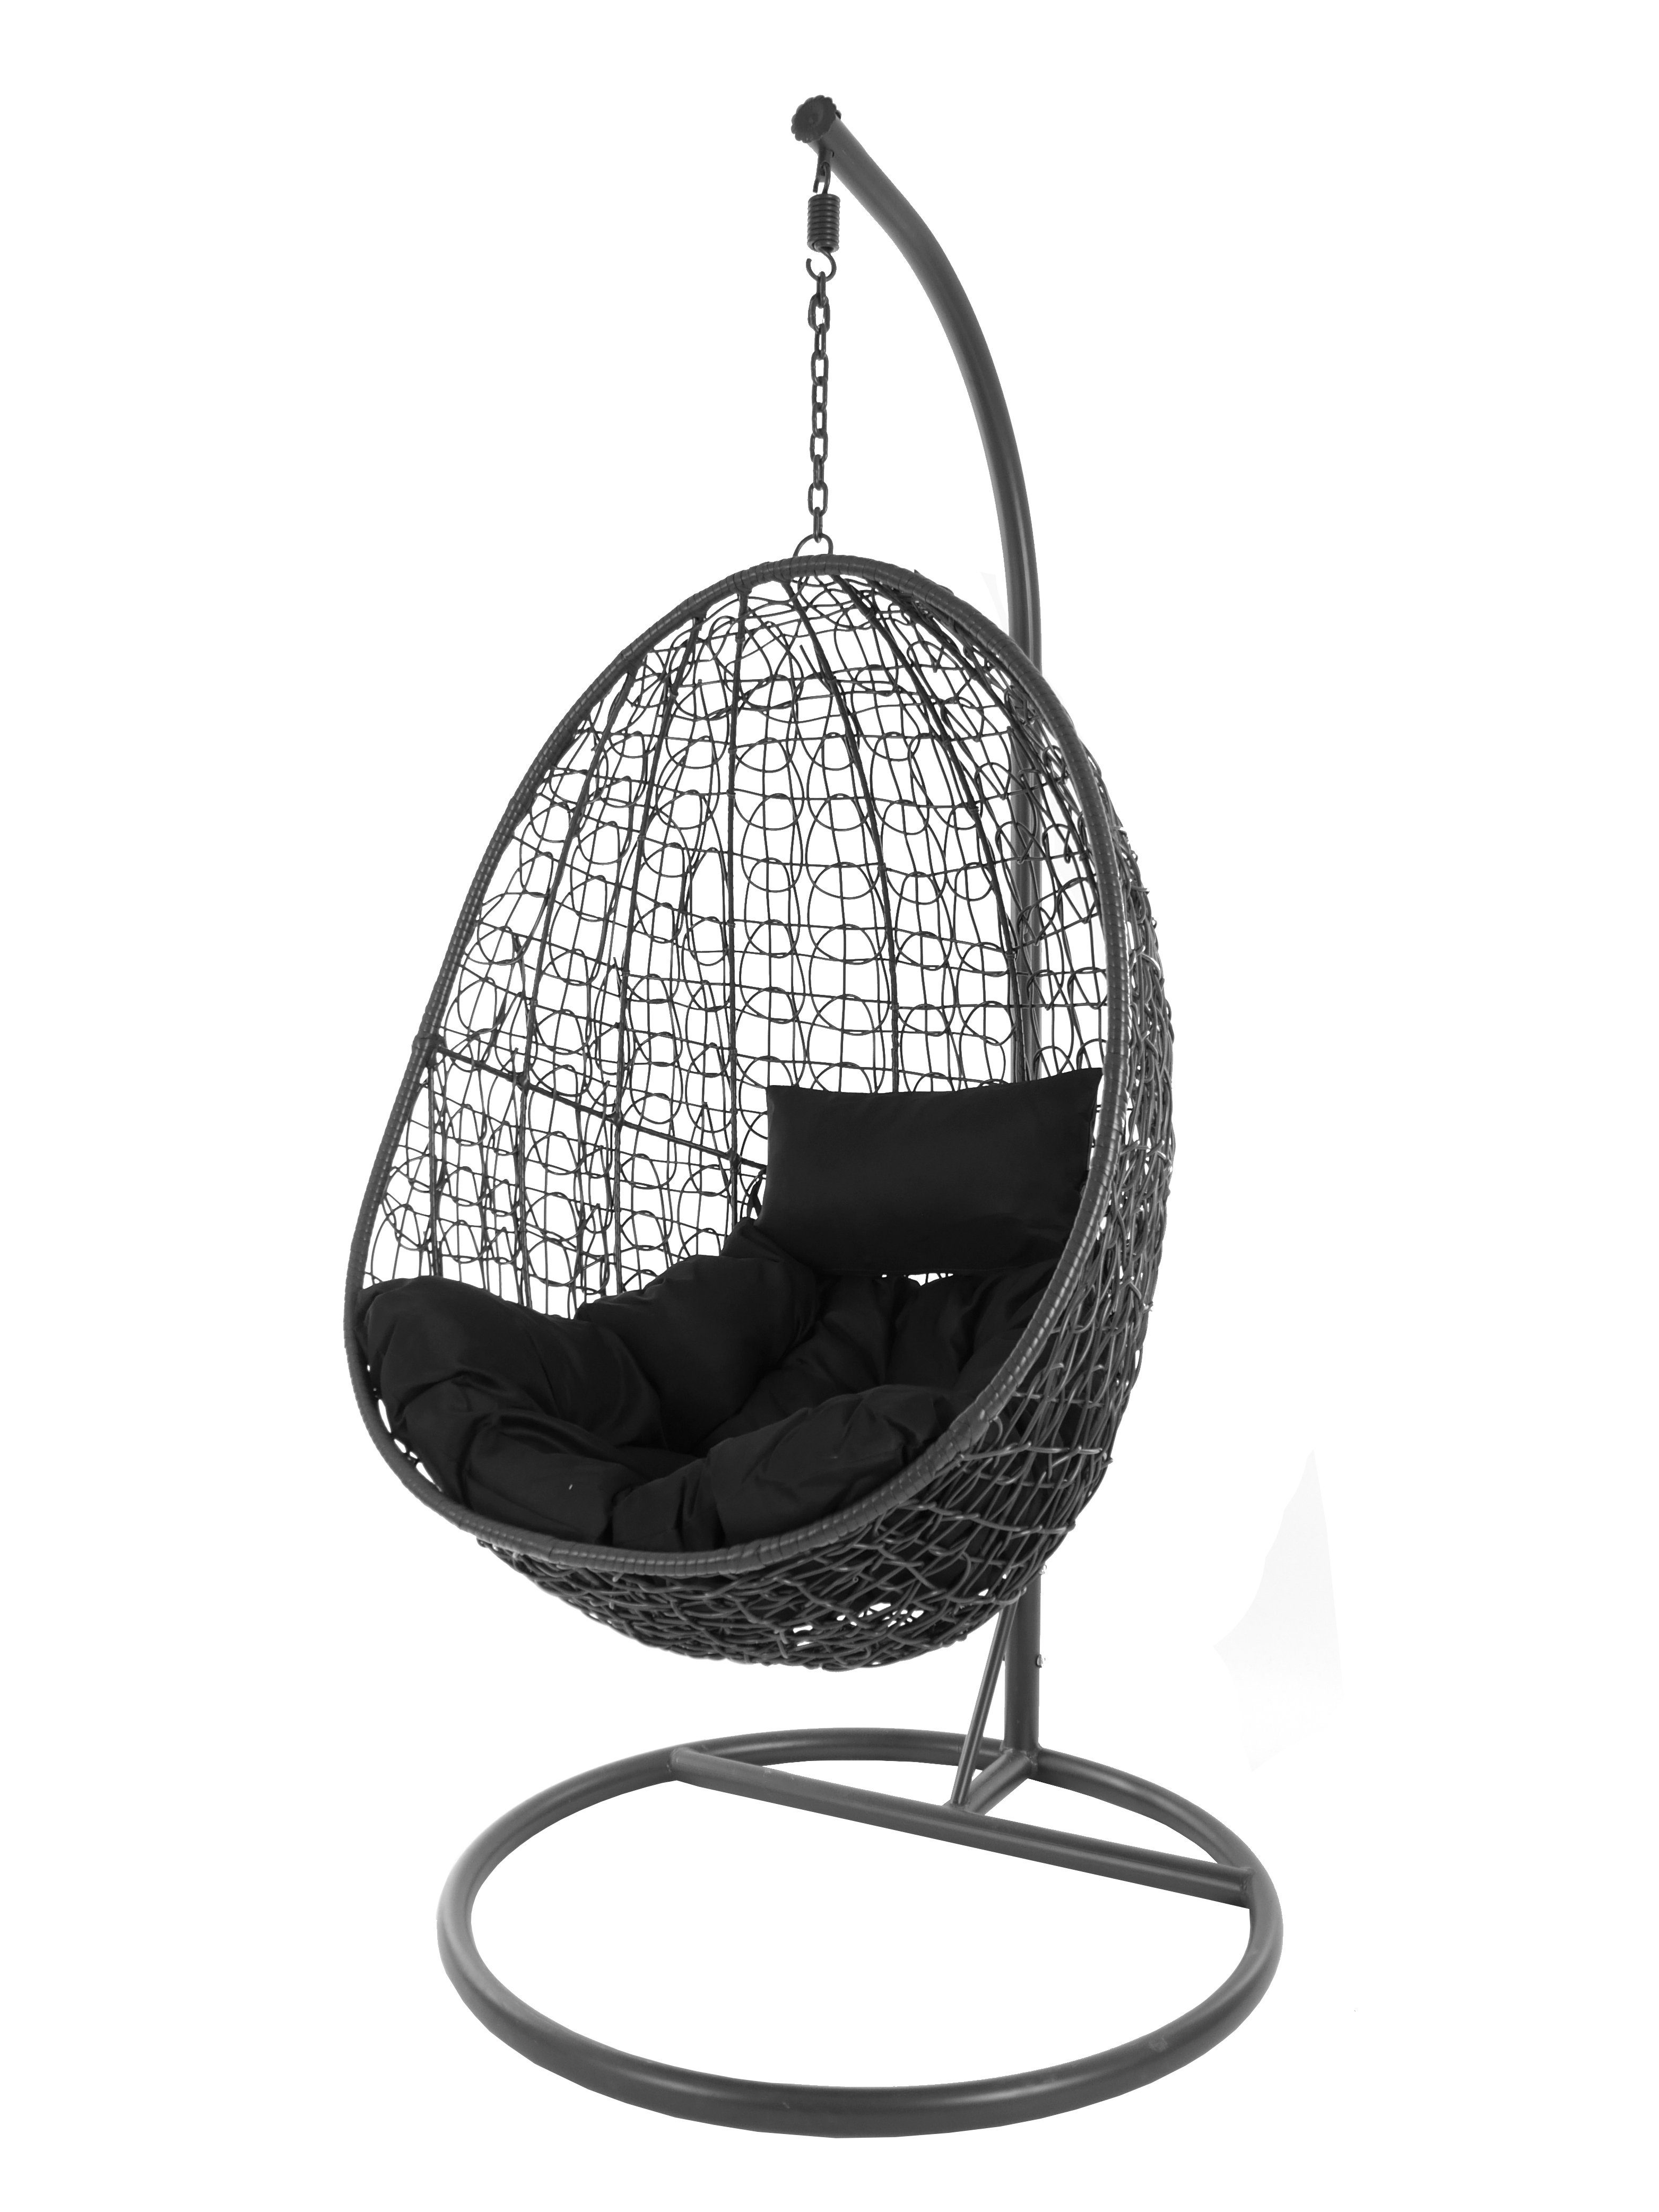 KIDEO Hängesessel Hängesessel Capdepera anthrazit, moderner Swing Chair, Schwebesessel mit Gestell und Kissen, Loungemöbel schwarz (9999 black)